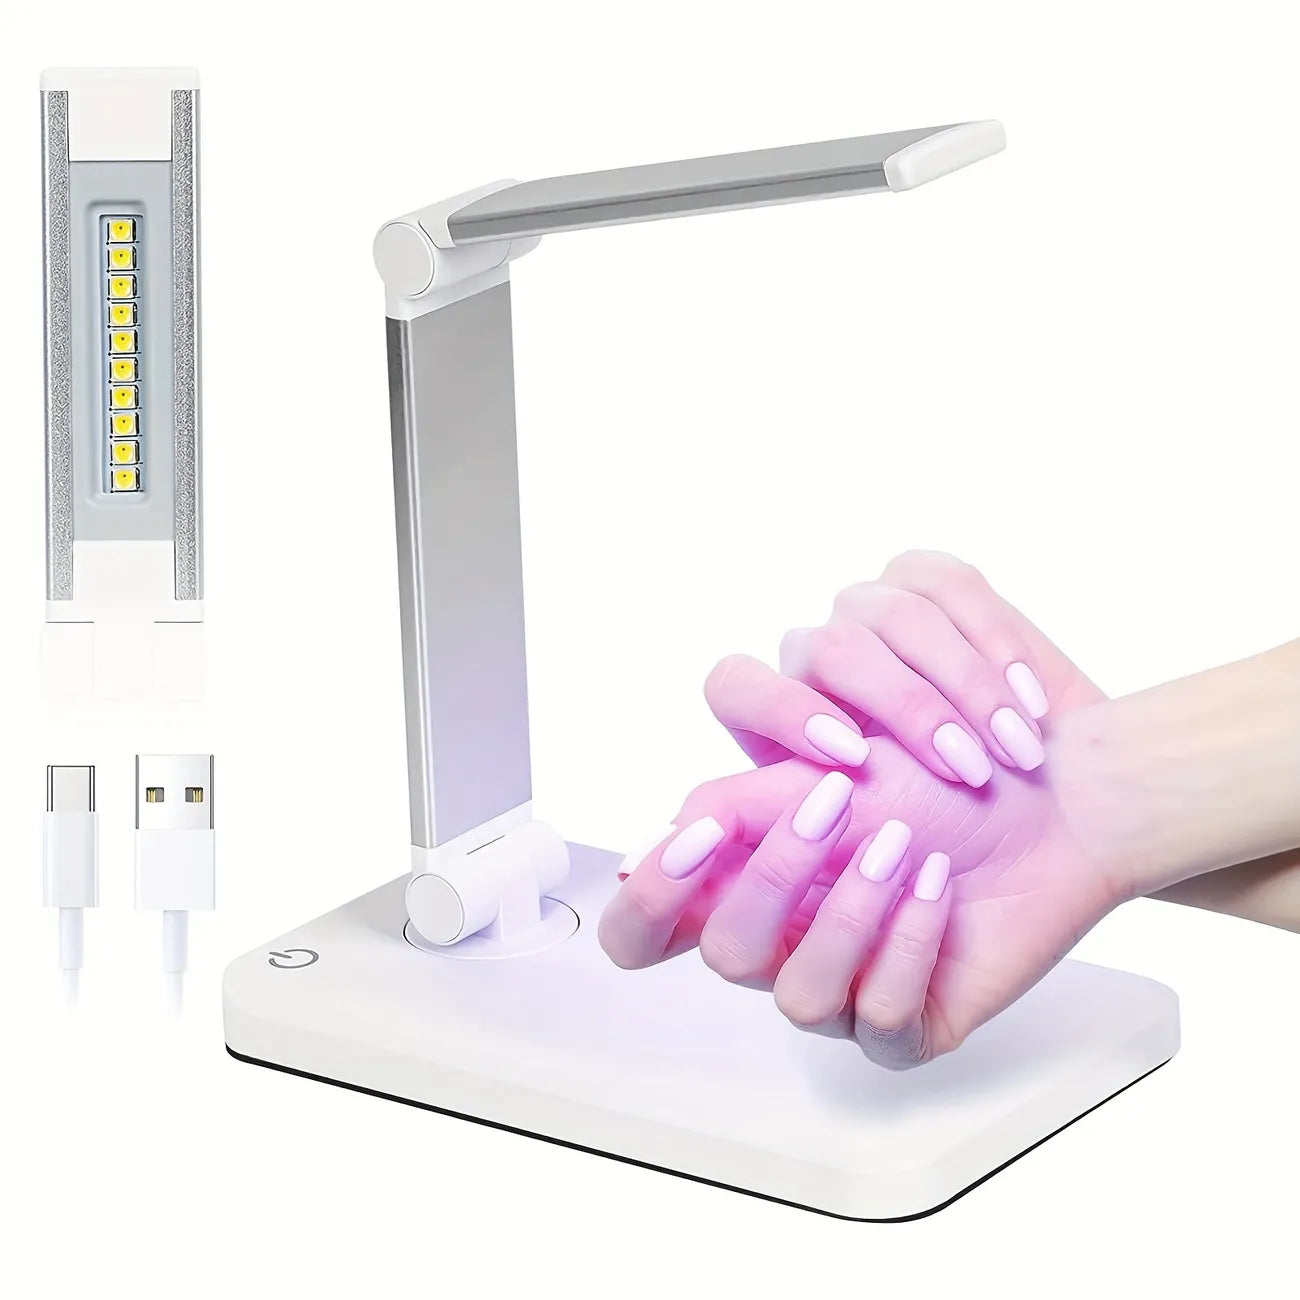 Foldable UV/LED nail lamp